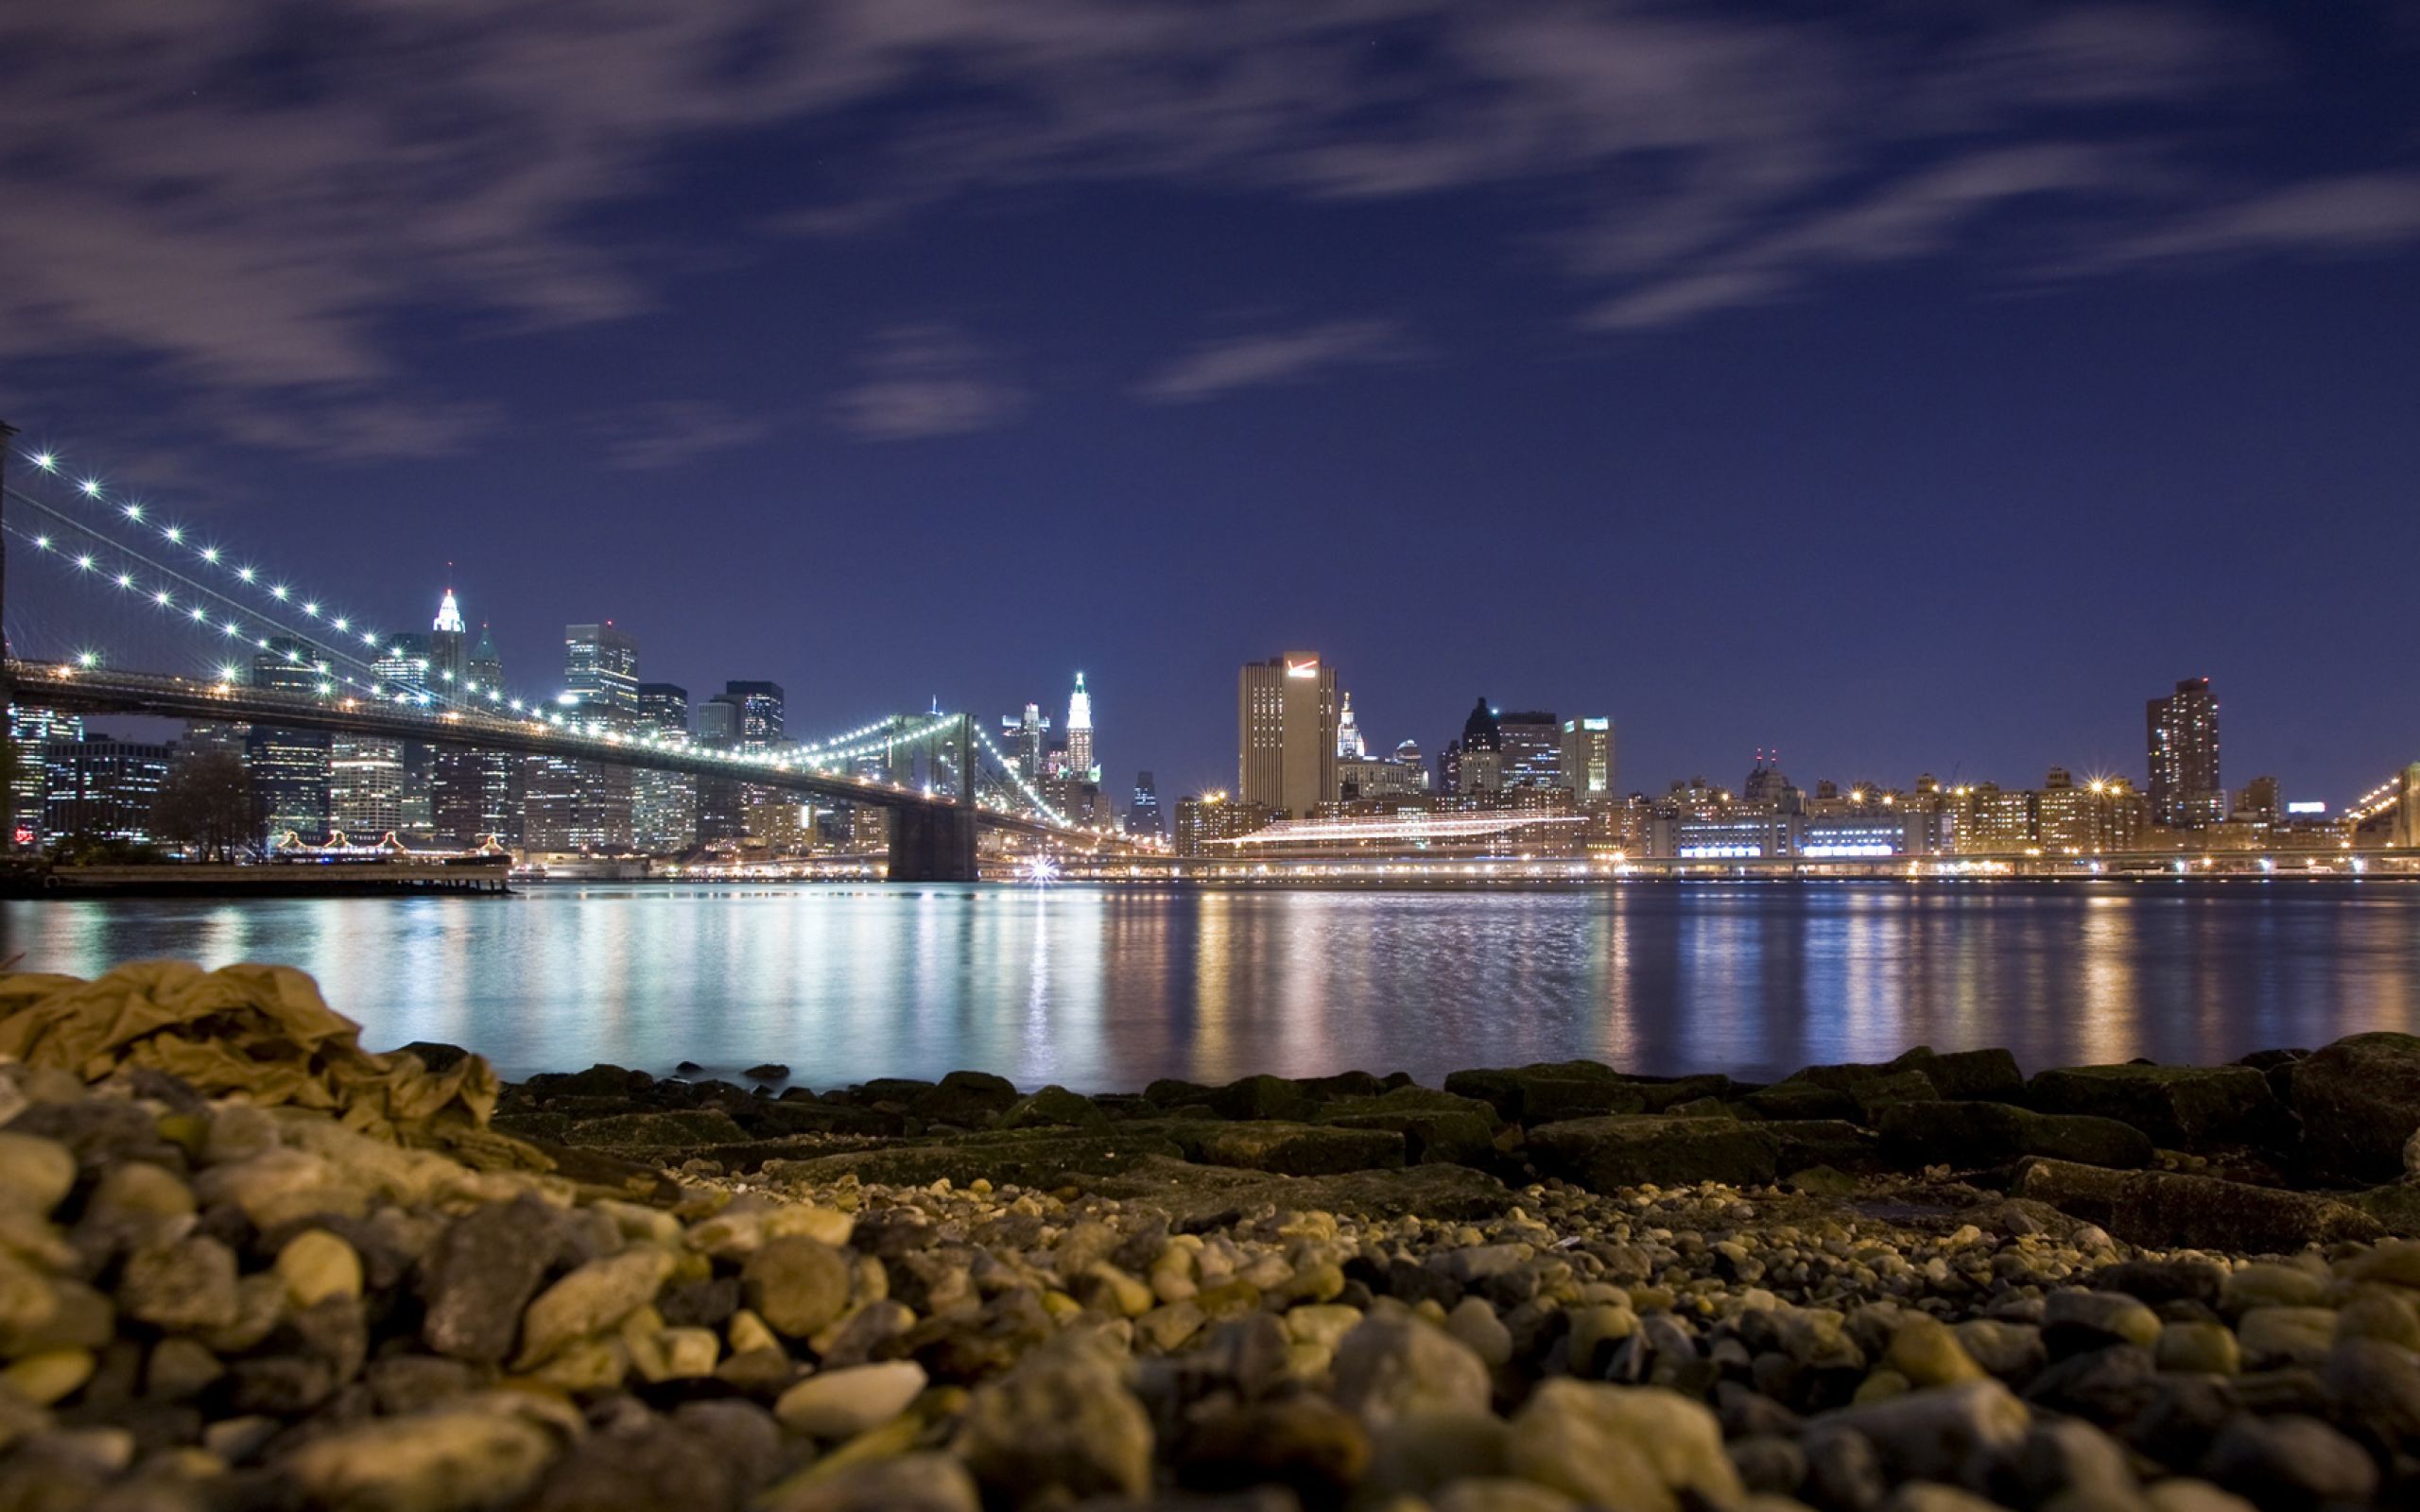 Фотографии размером 1024 2048 пикселей сохранили. Бруклинский мост Нью-Йорк ночью. Бруклинский мост панорама. Пусан мост Нью-Йорк. Ночной Нью-Йорк Манхэттен.